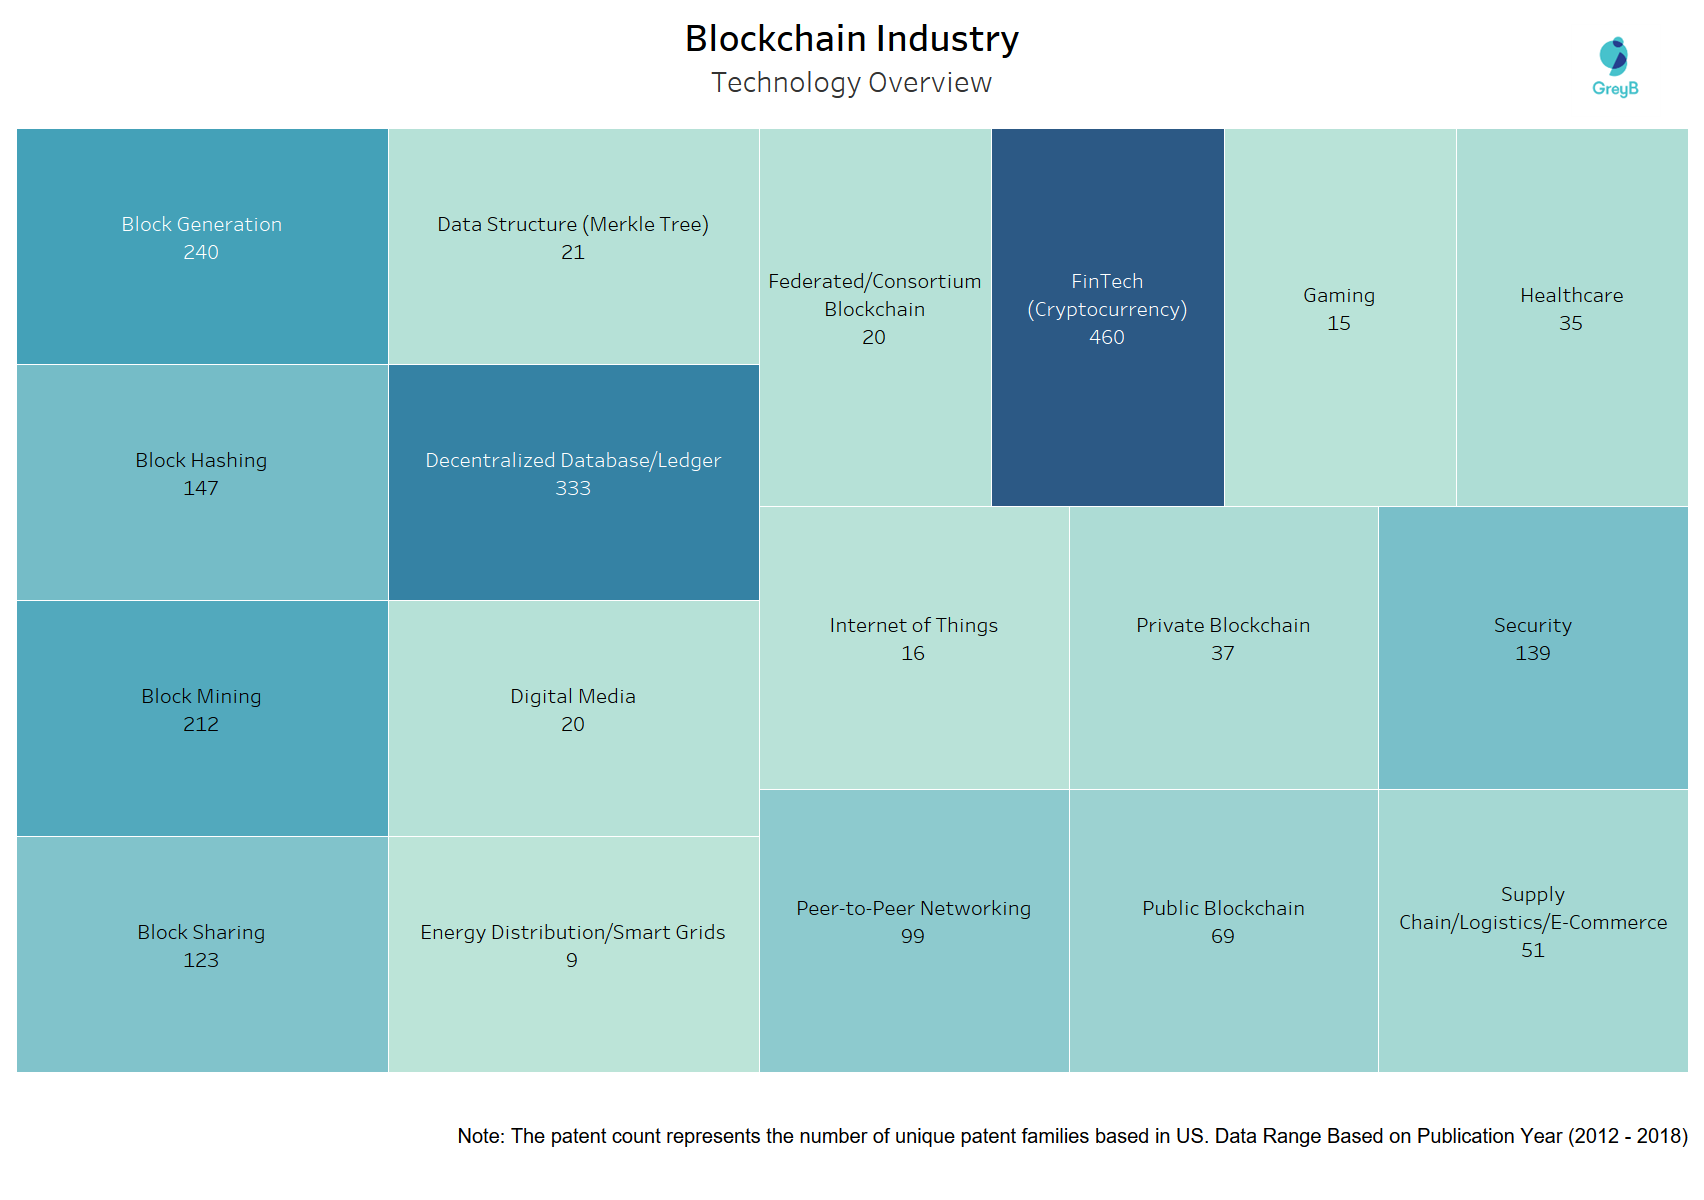 Blockchain industry technlogy area
Blockchain industry technlogy analysis
Blockchain industry technlogy overview